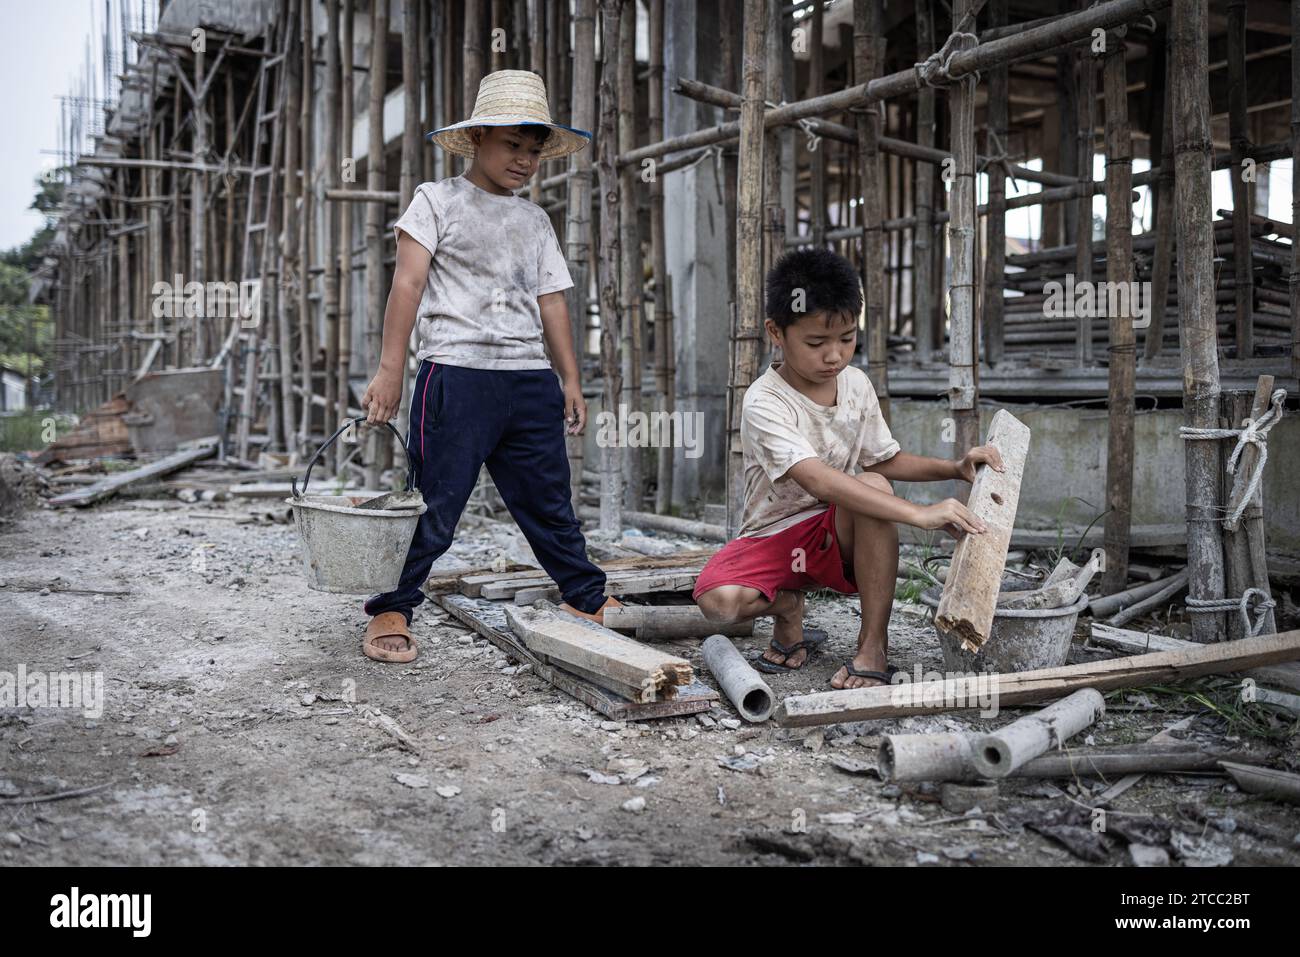 Konzept der Kinderarbeit, arme Kinder als Opfer von Bauarbeit, Menschenhandel, Kindesmisshandlung. Stockfoto